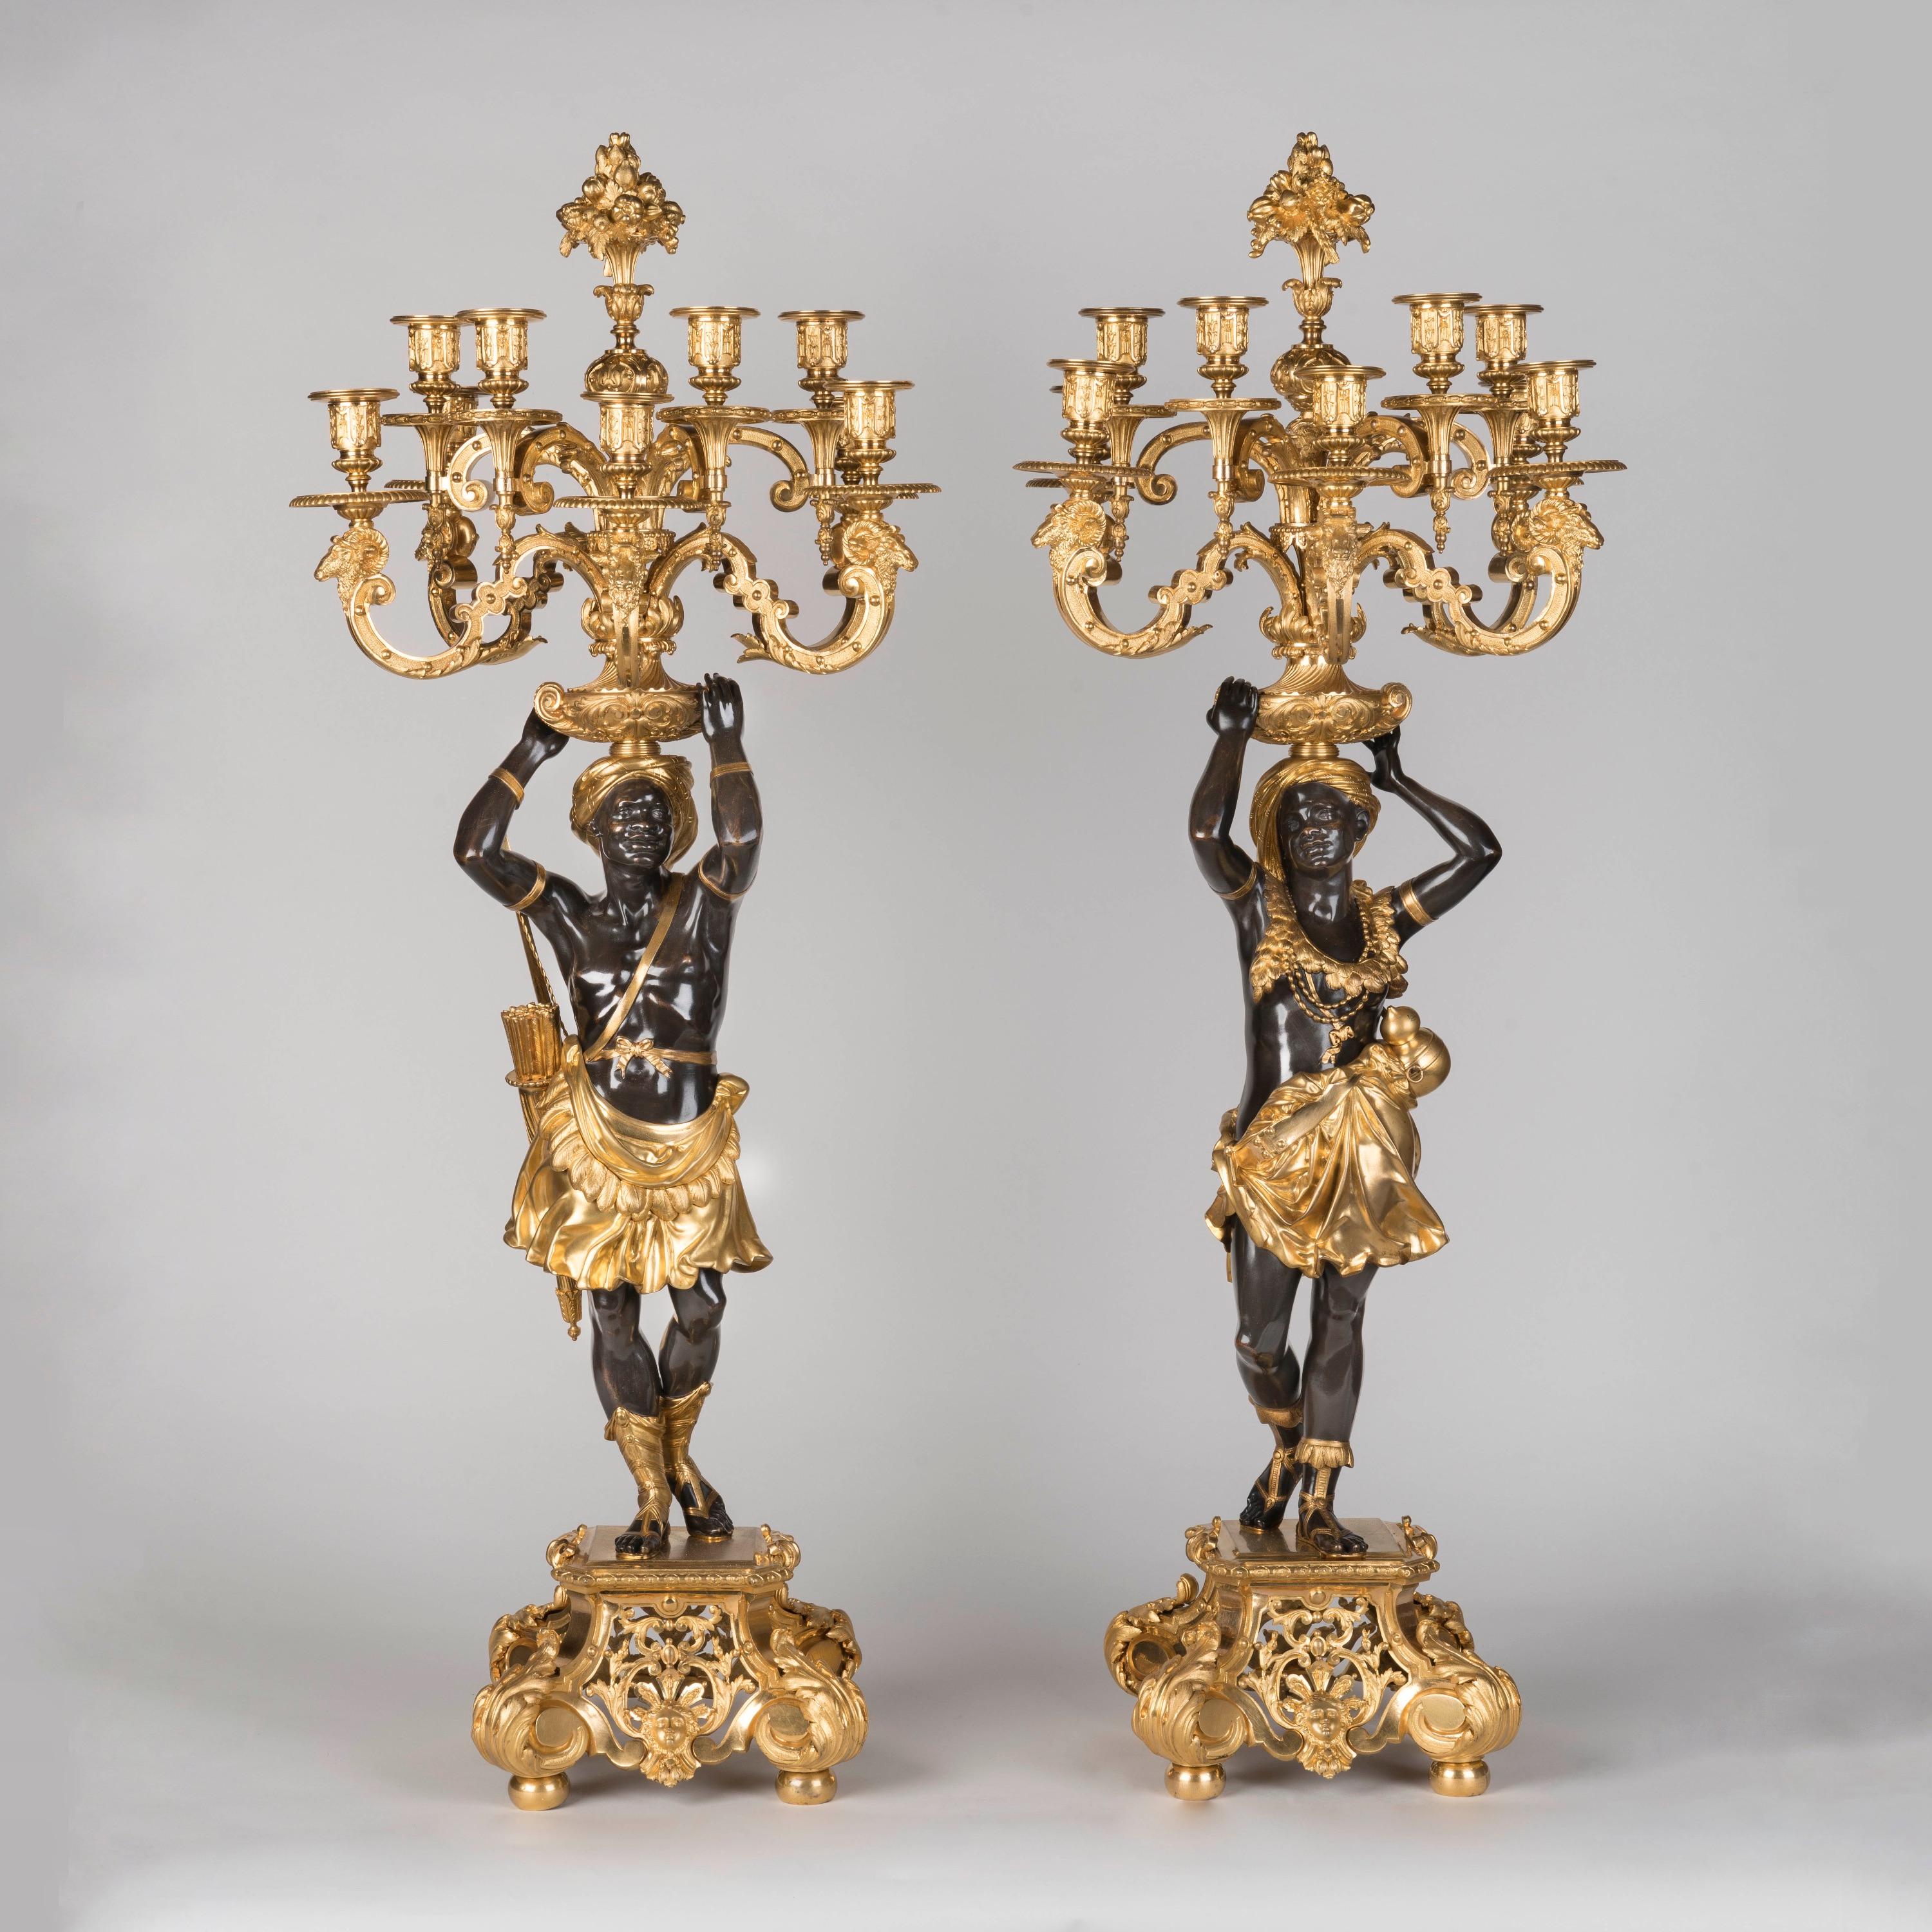 Ein bedeutendes Paar patinierter und vergoldeter Bronzefiguren-Kandelaber
Von Denière von Paris & Henri Picard

Modelliert von Carrier-Belleuse (1824-1887)

Aus patinierter und vergoldeter Bronze, in der von Jean le Pautre populär gemachten Louis